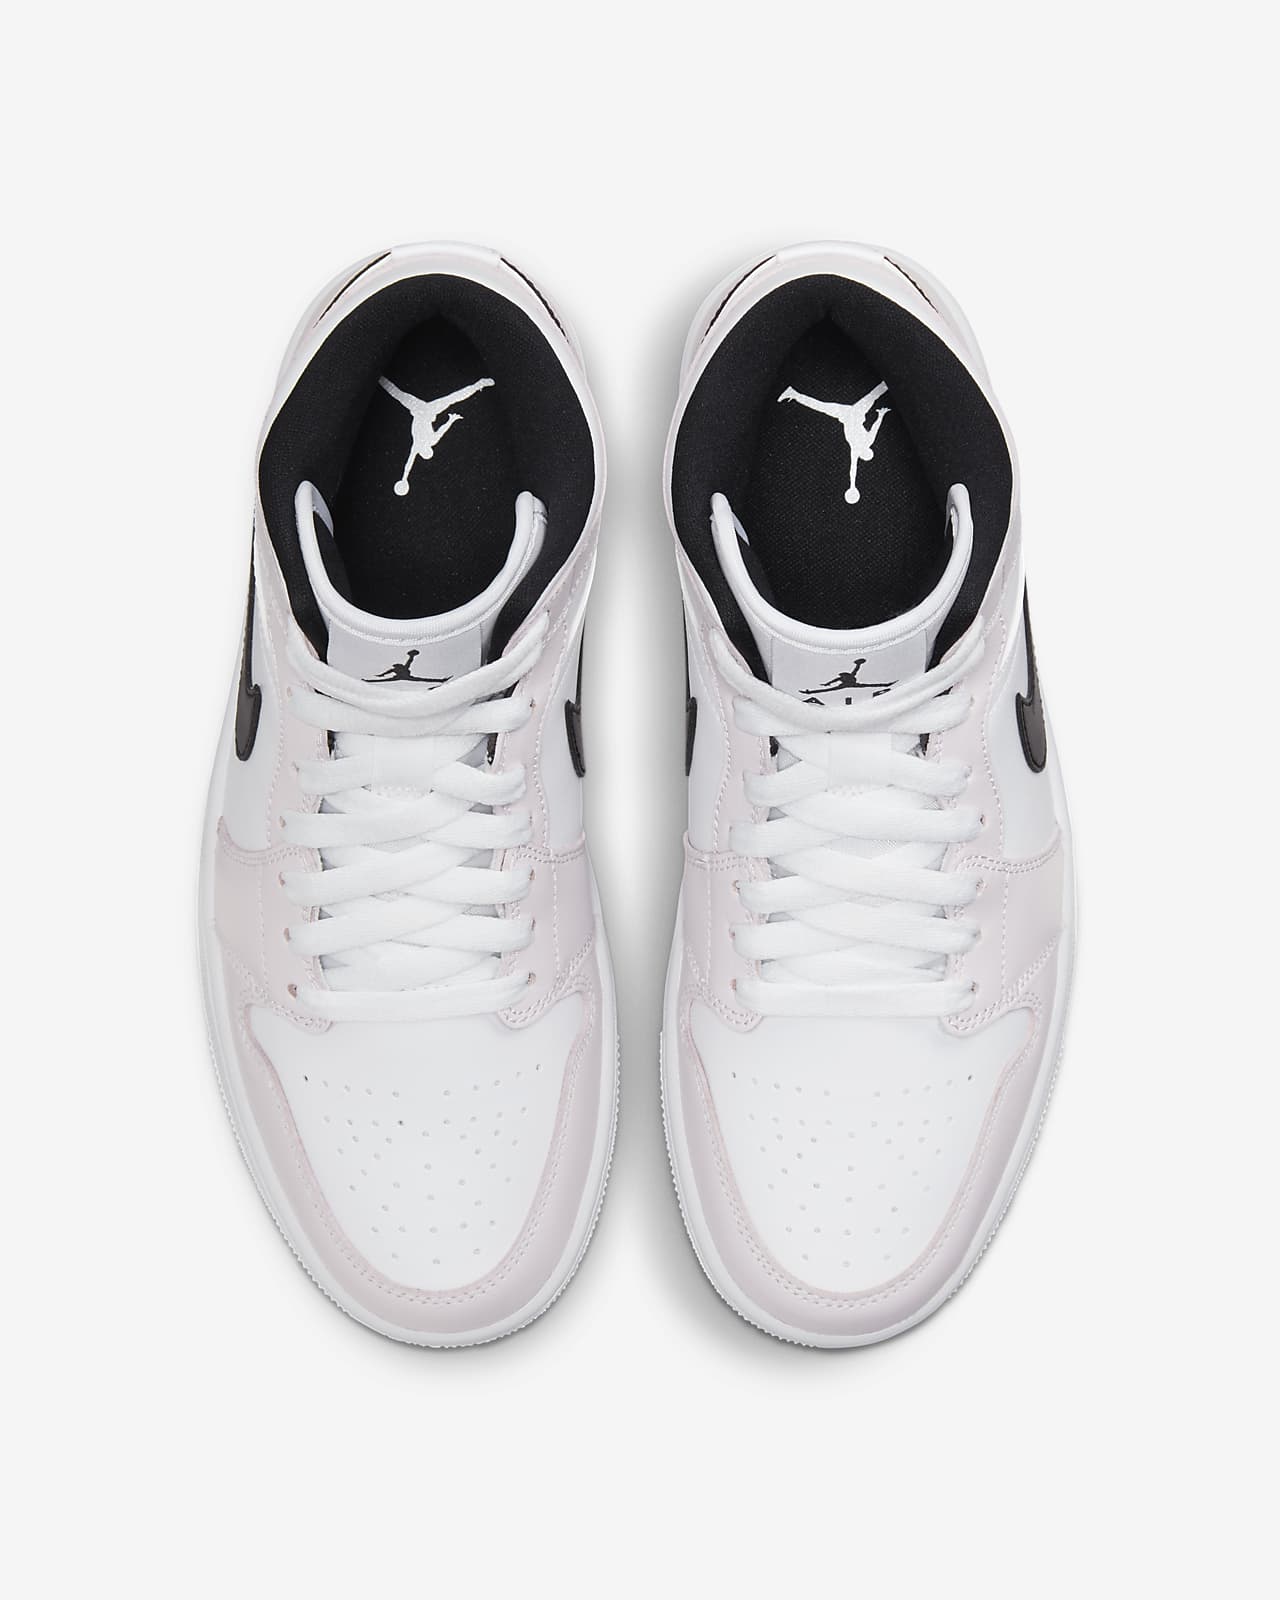 Chaussure Air Jordan 1 Mid pour Femme. Nike LU